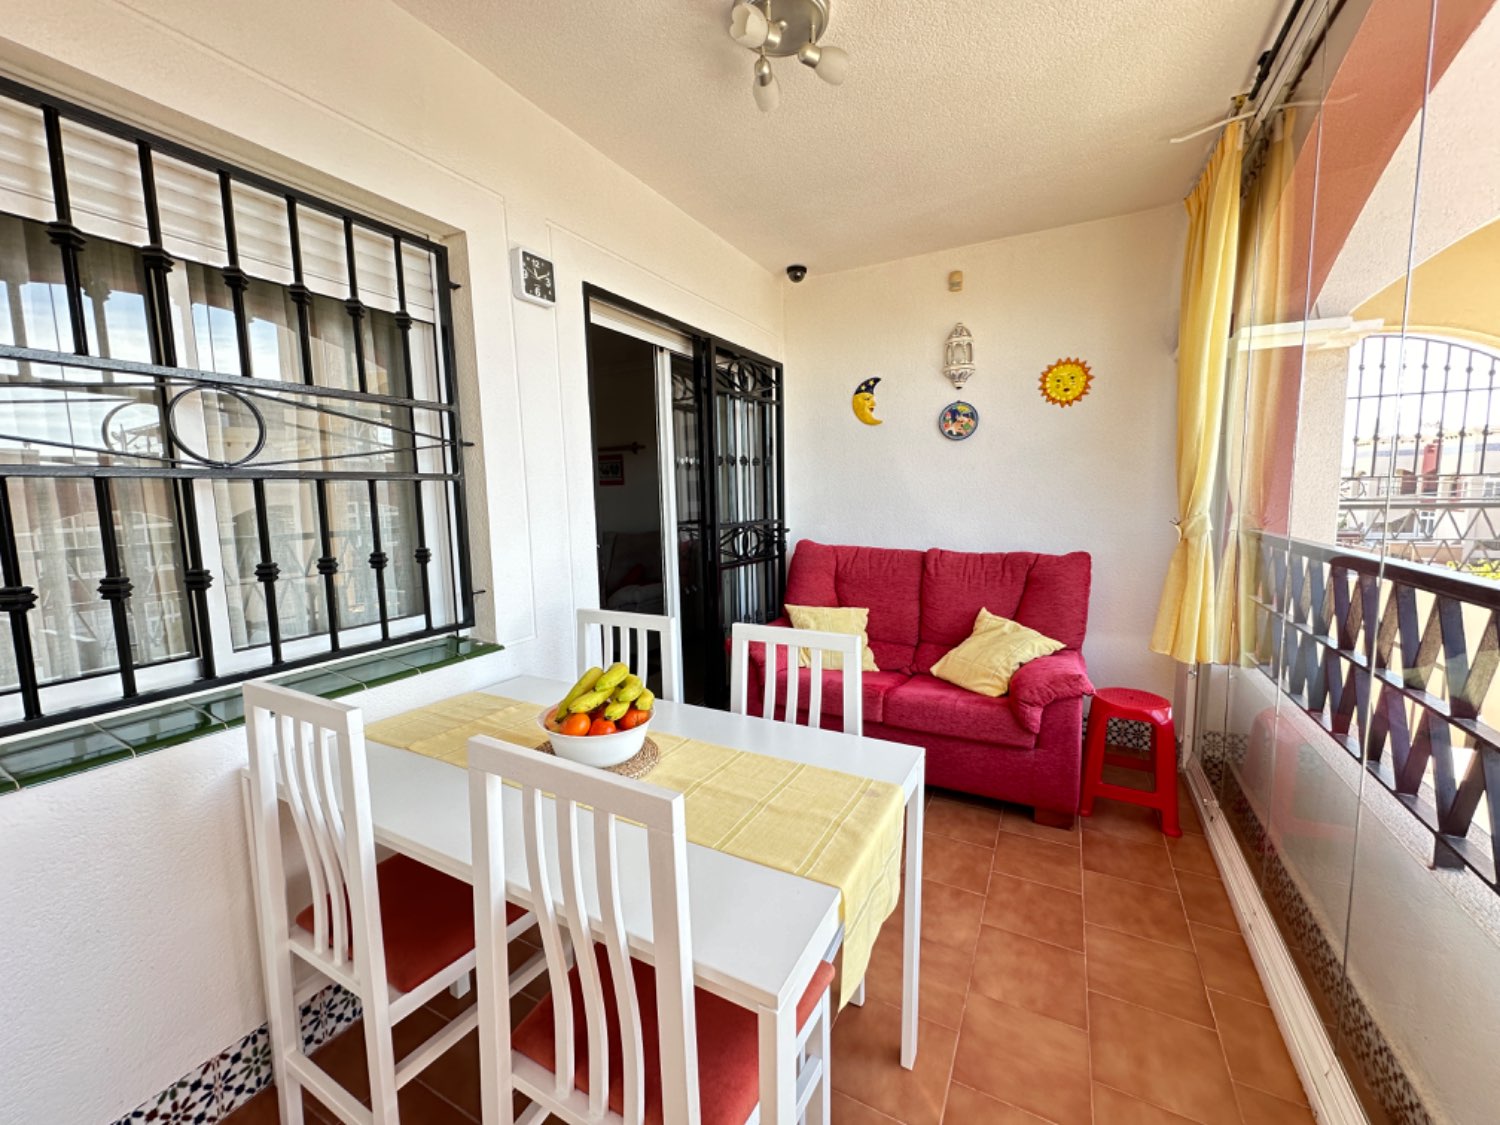 Rohový byt v nejvyšším patře se nachází v Los Altos de Orihuela Costa 2 ložnice v perfektních podmínkách